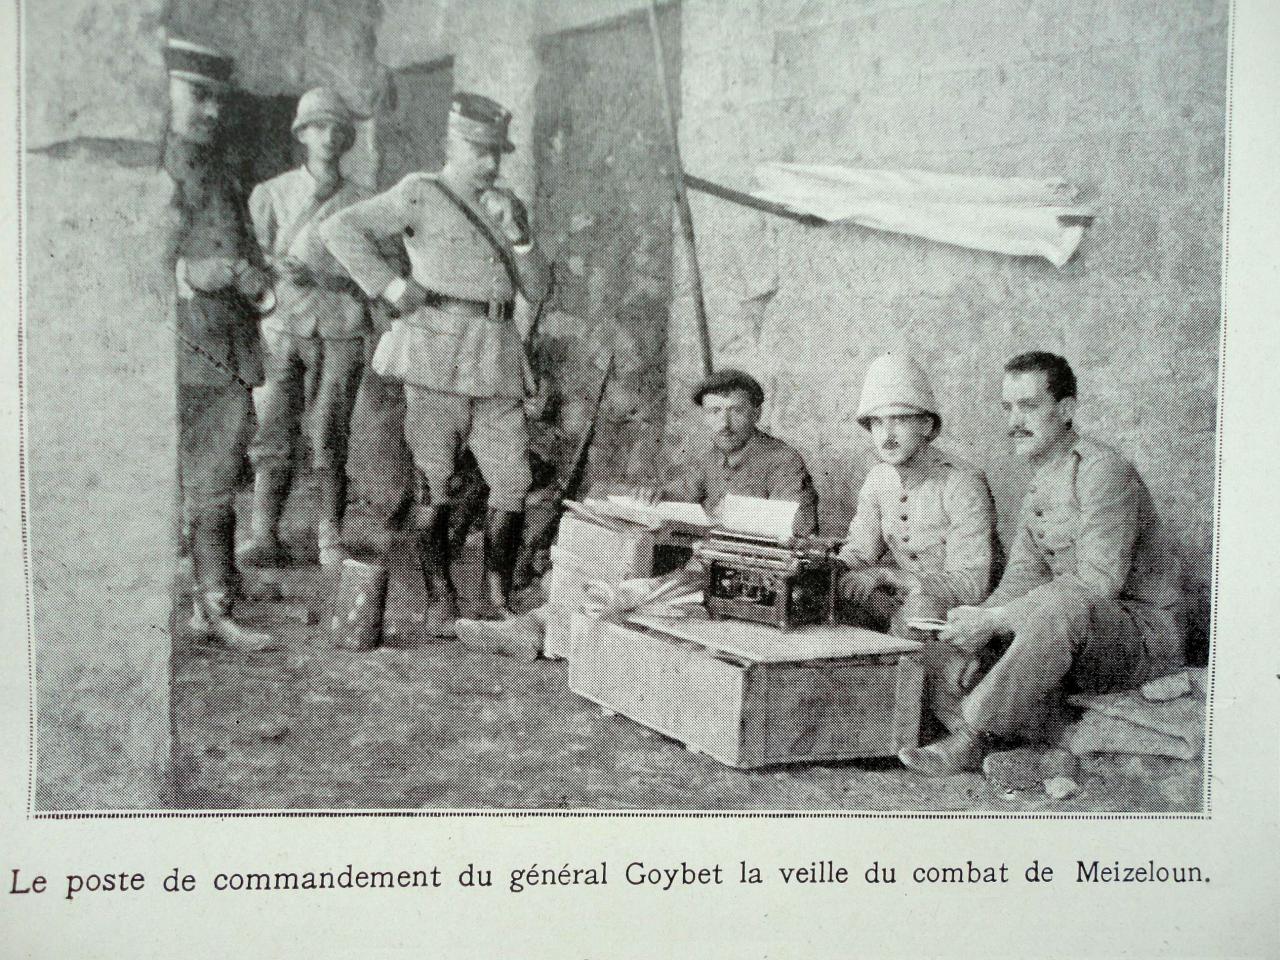 Le poste de commandement du GÃ¨nÃ©ral Goybet  Ã  la veille du combat de meizeloun